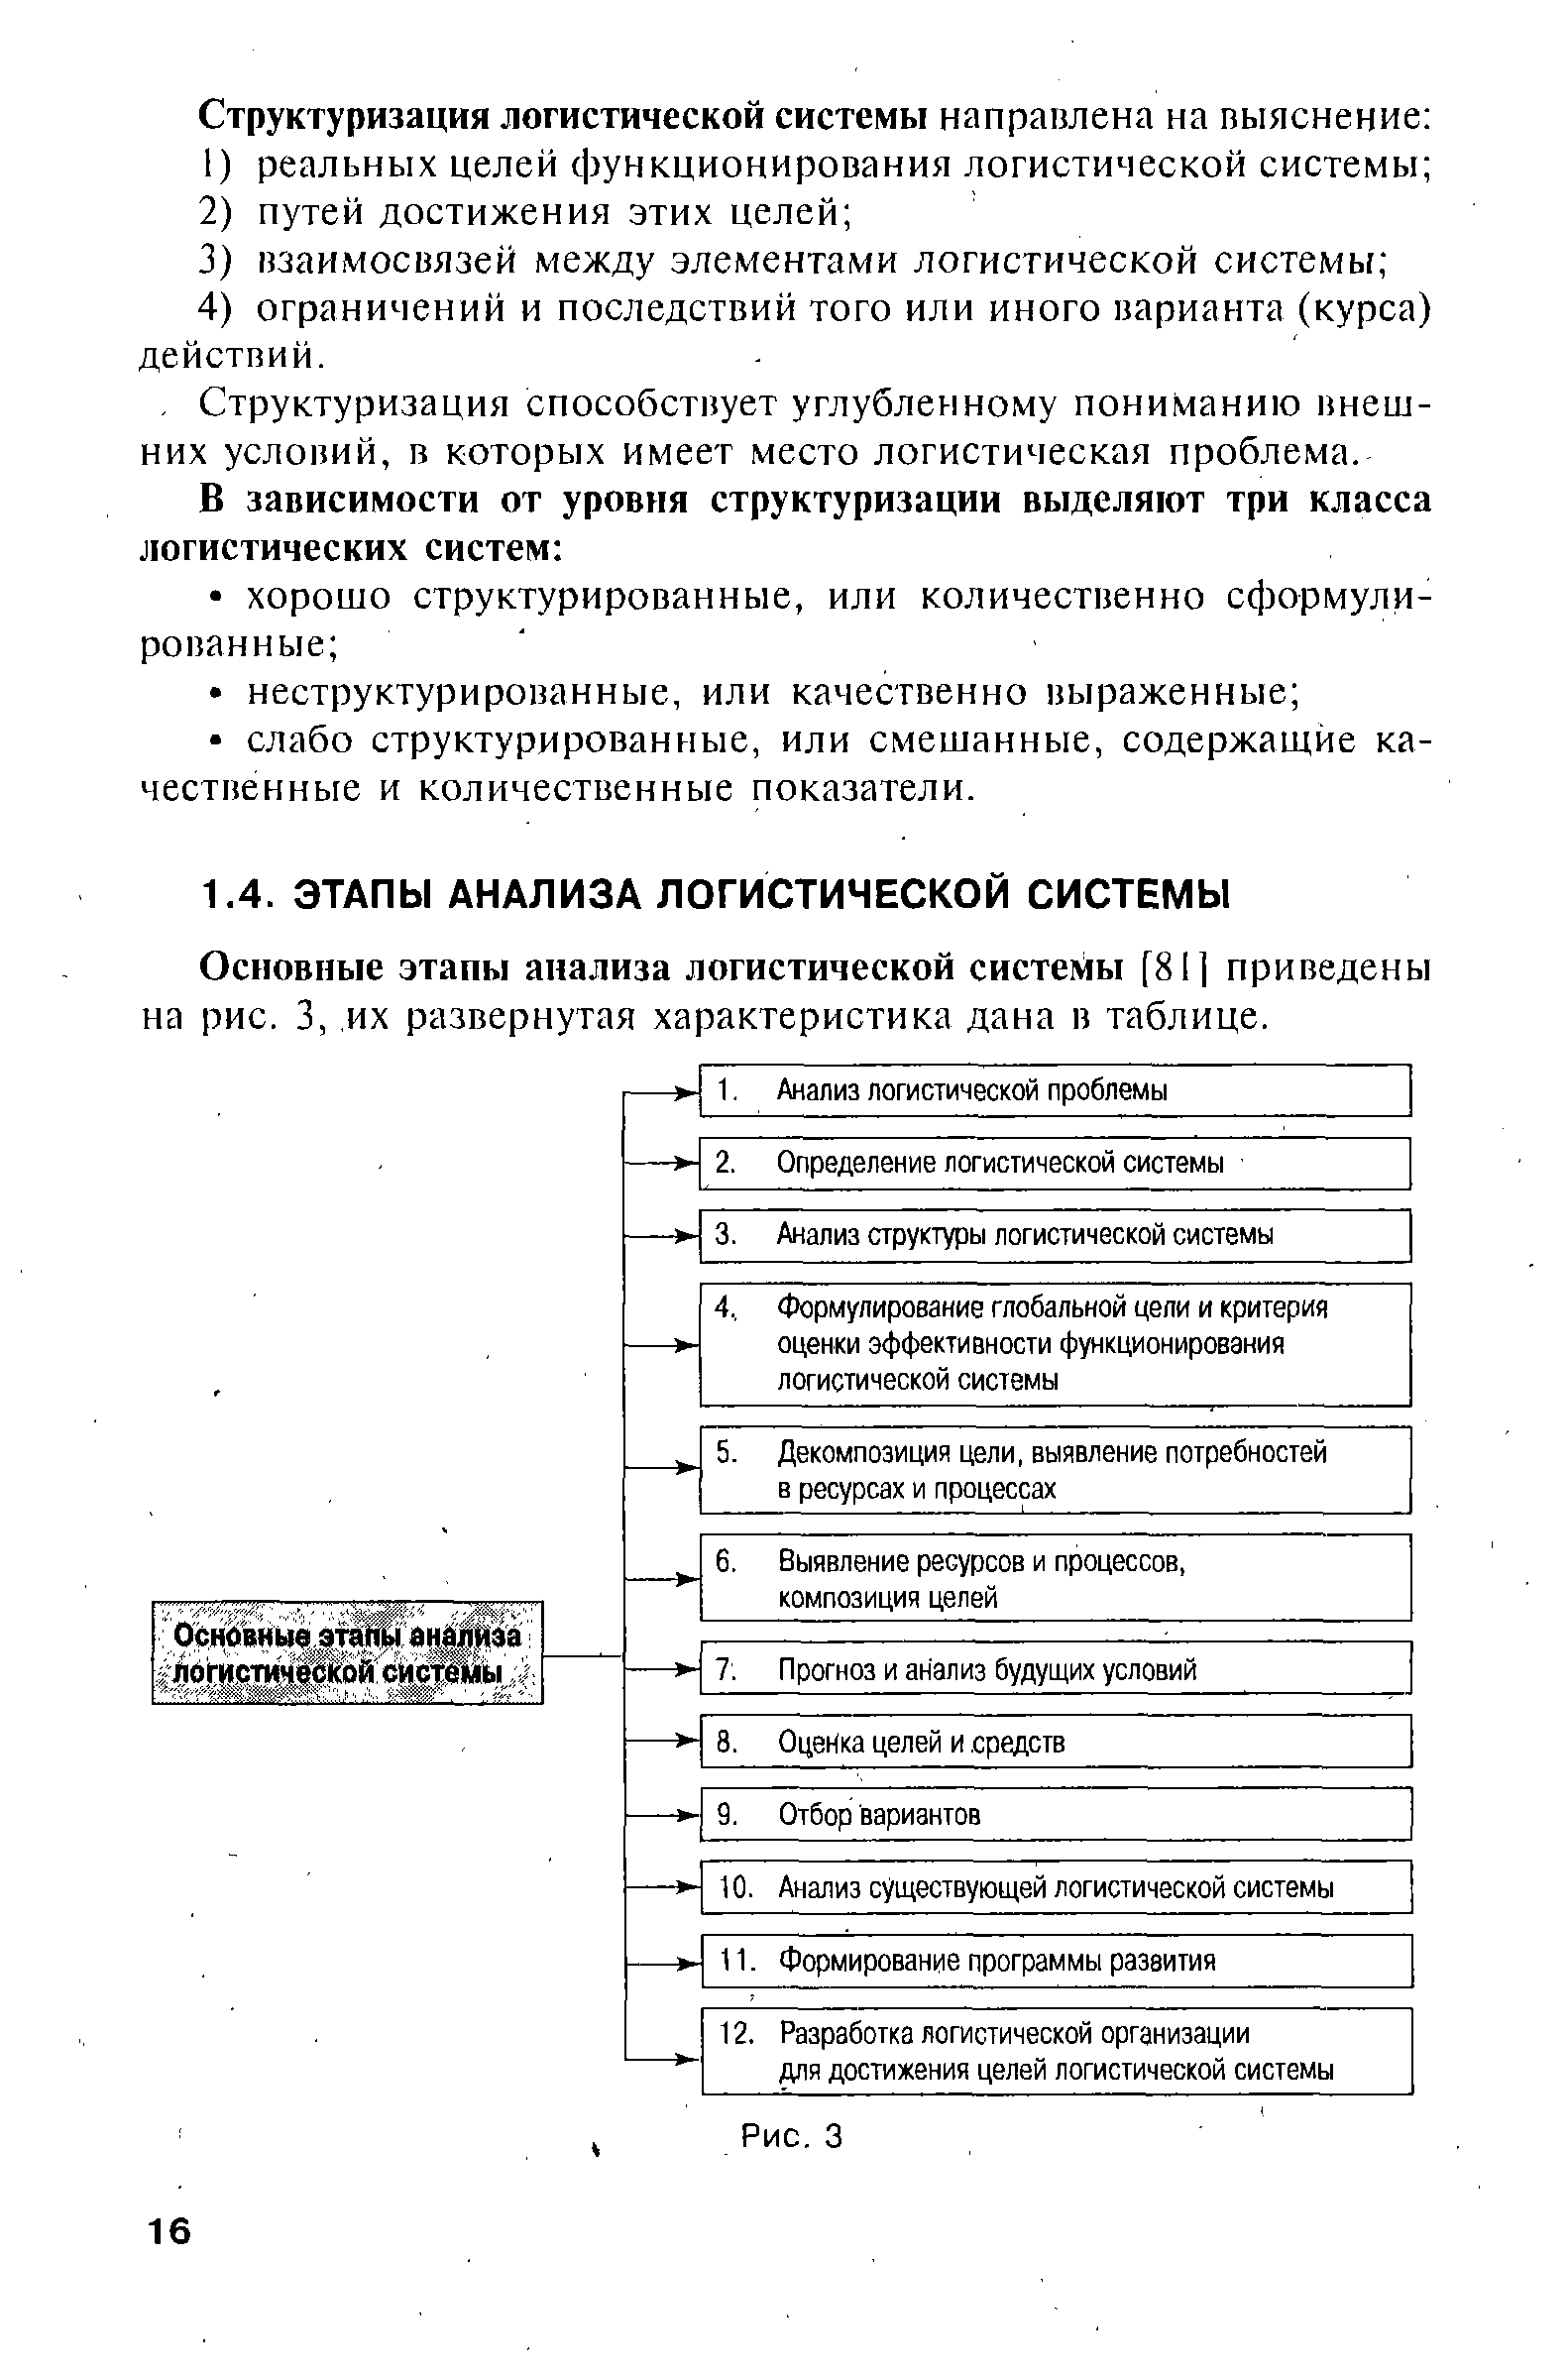 Основные этапы анализа логистической системы [81] приведены на рис. 3,, их развернутая характеристика дана в таблице.
